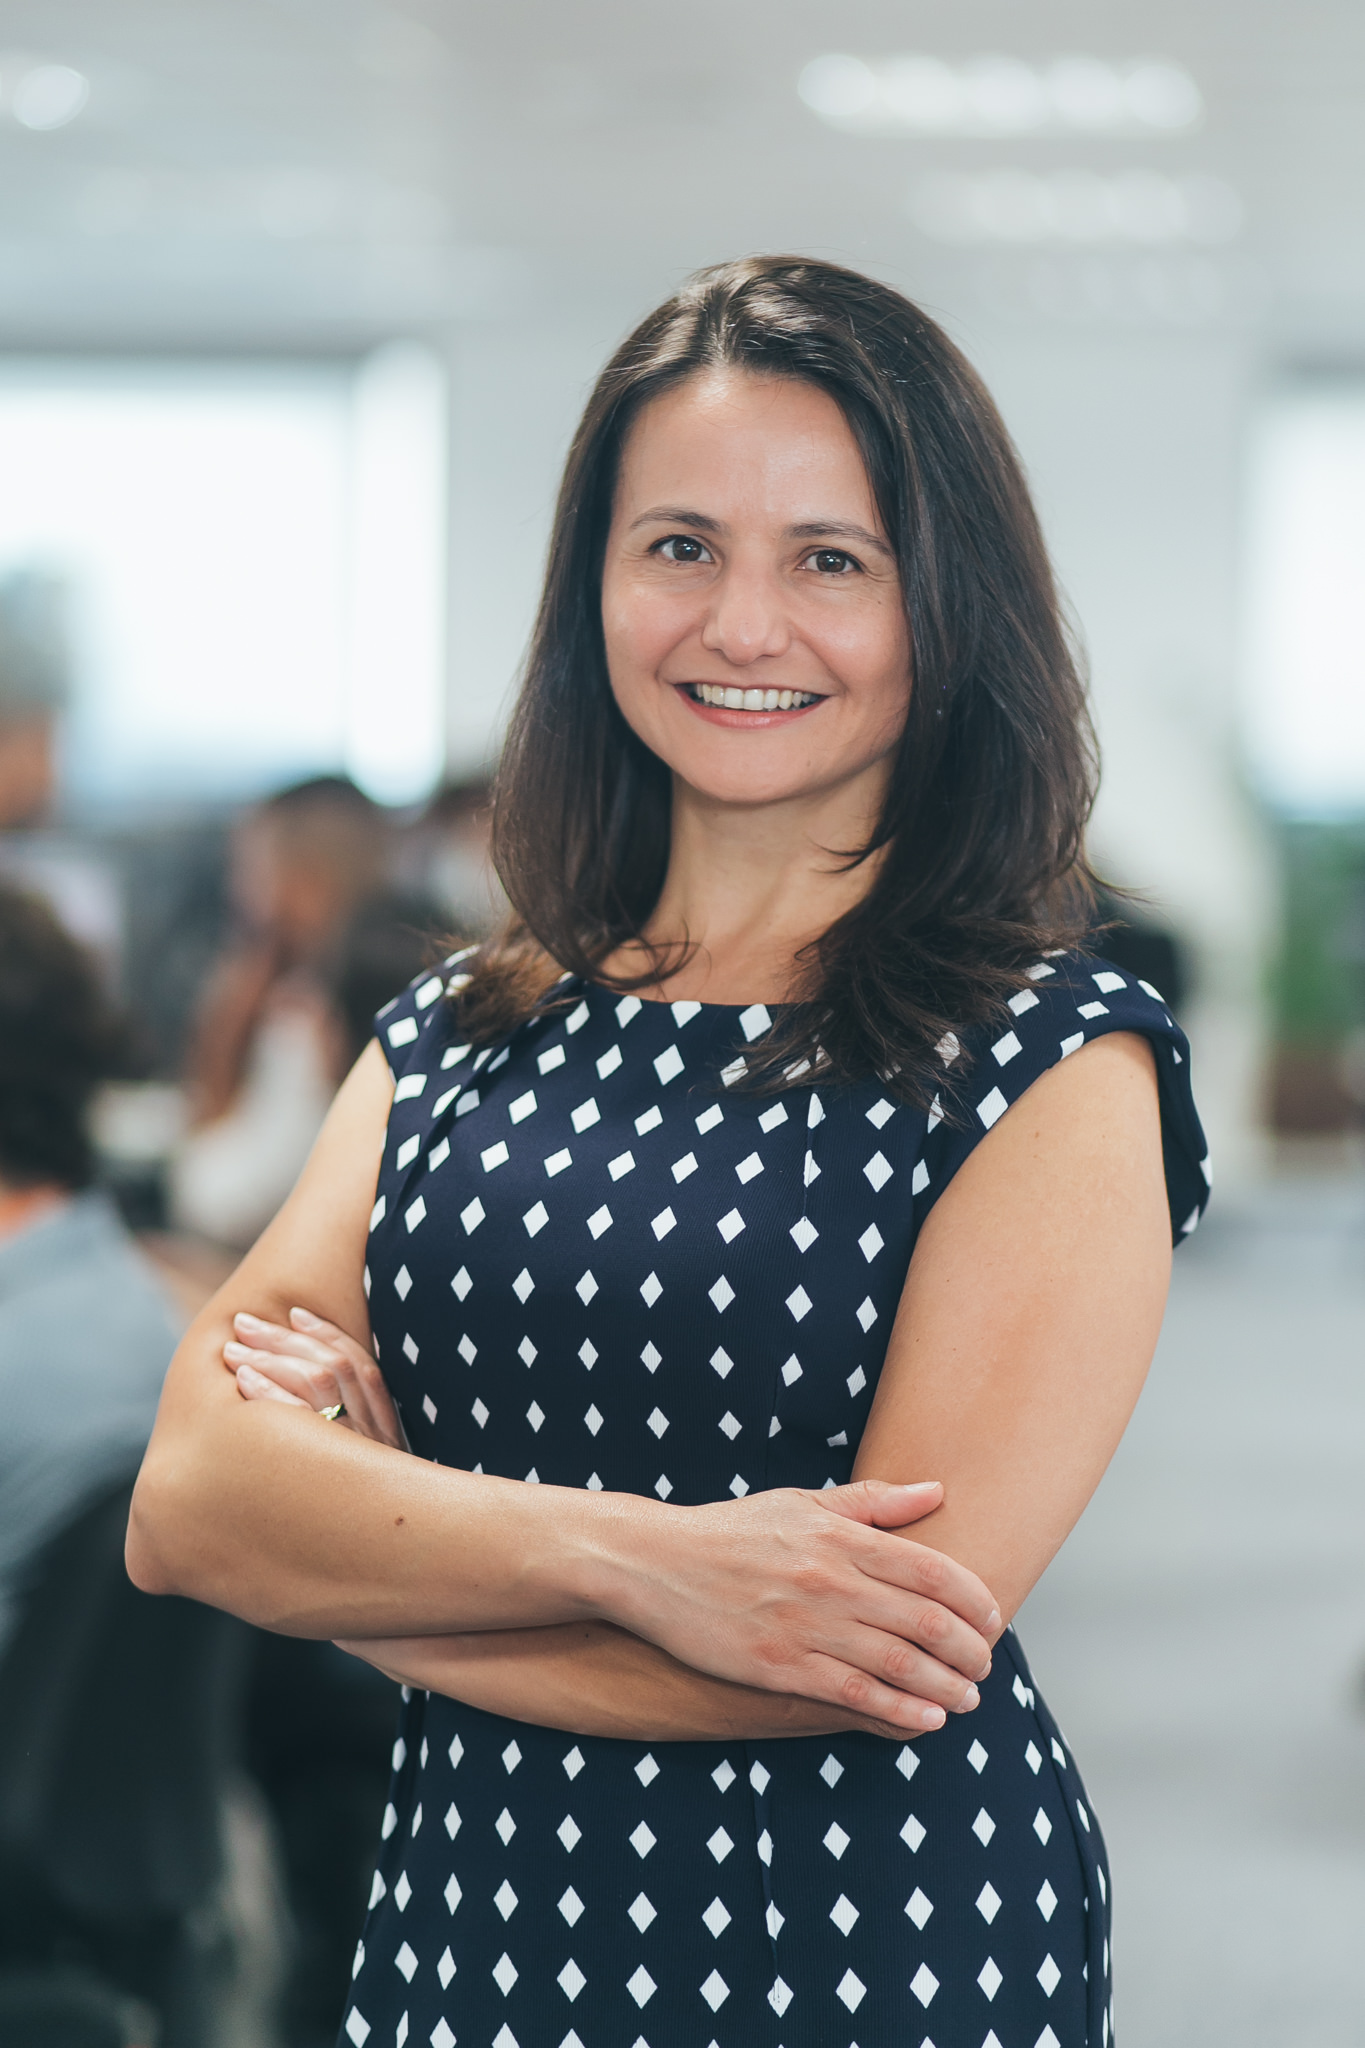 Fabiana Salles, fundadora da Gesto, plataforma de gestão de saúde corporativa baseada em dados que foi adquirida pela Dasa em 2021